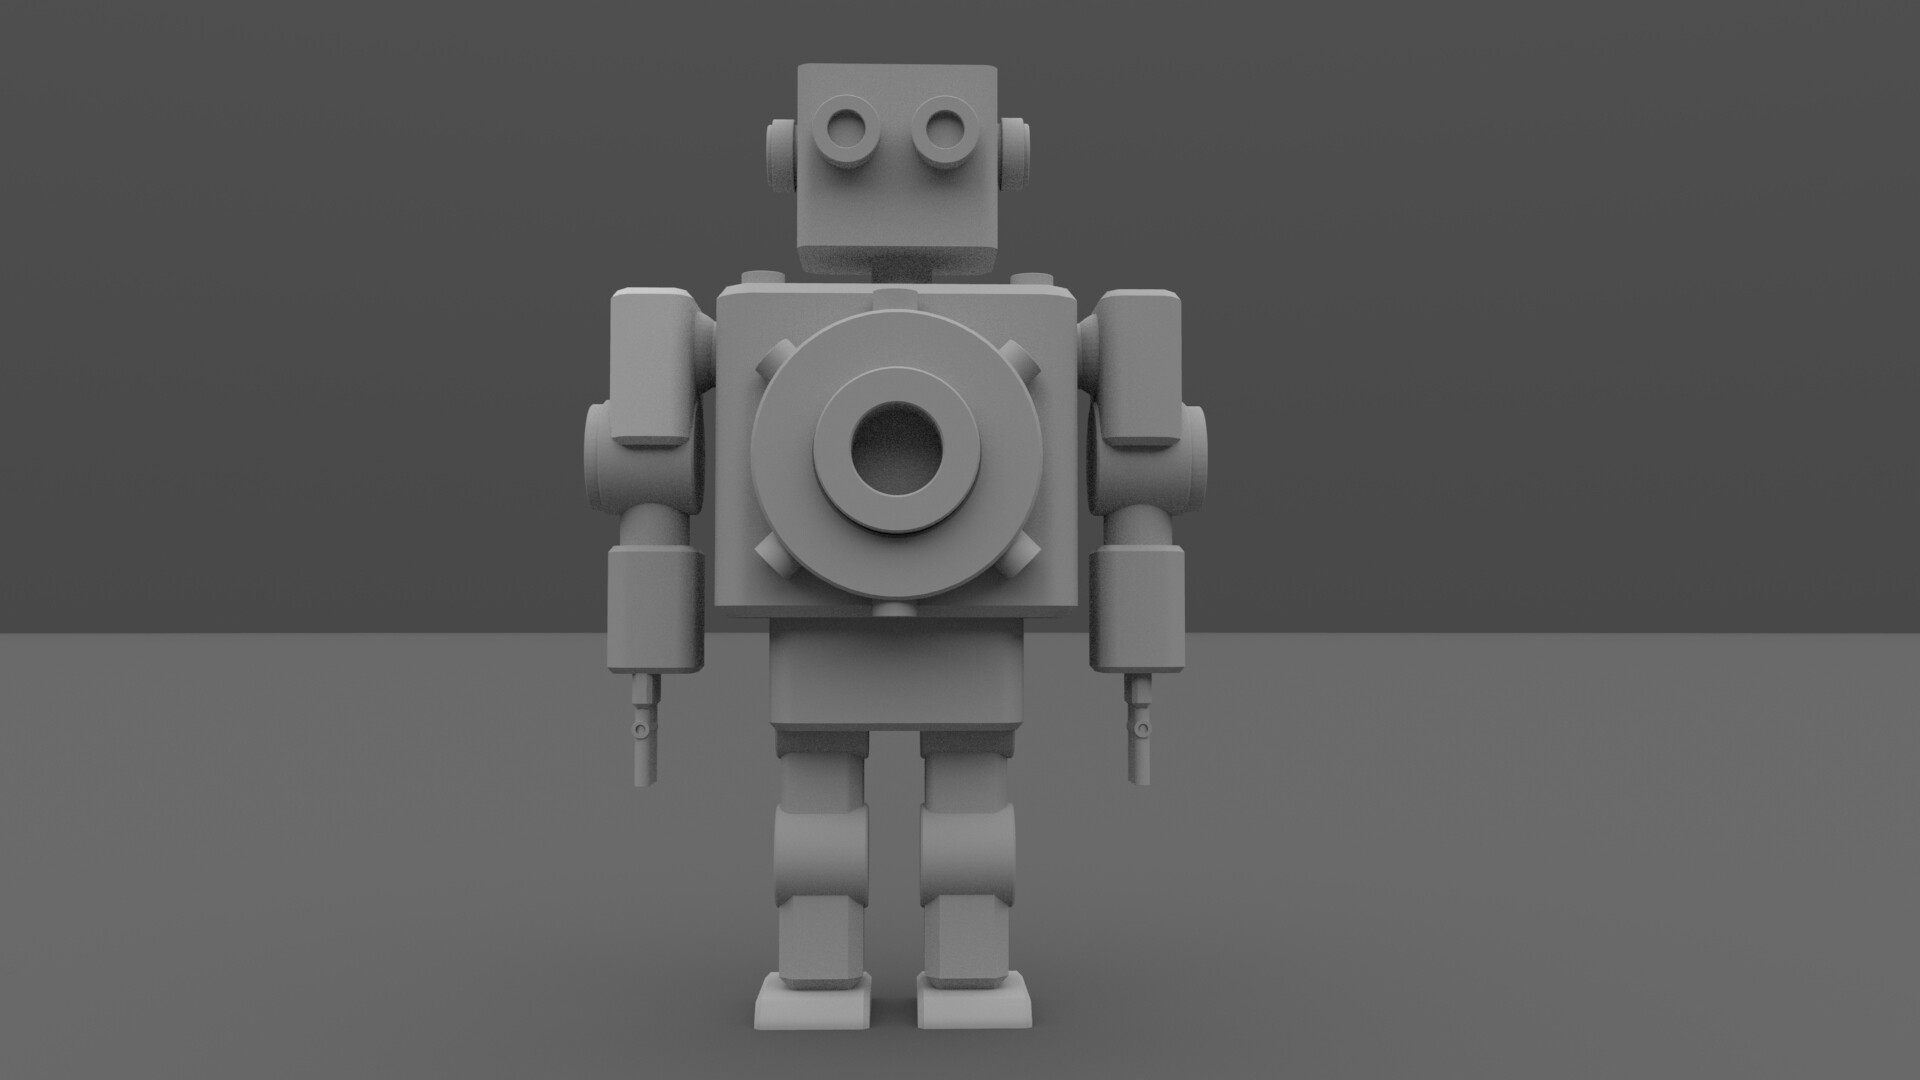 simple robot 3d